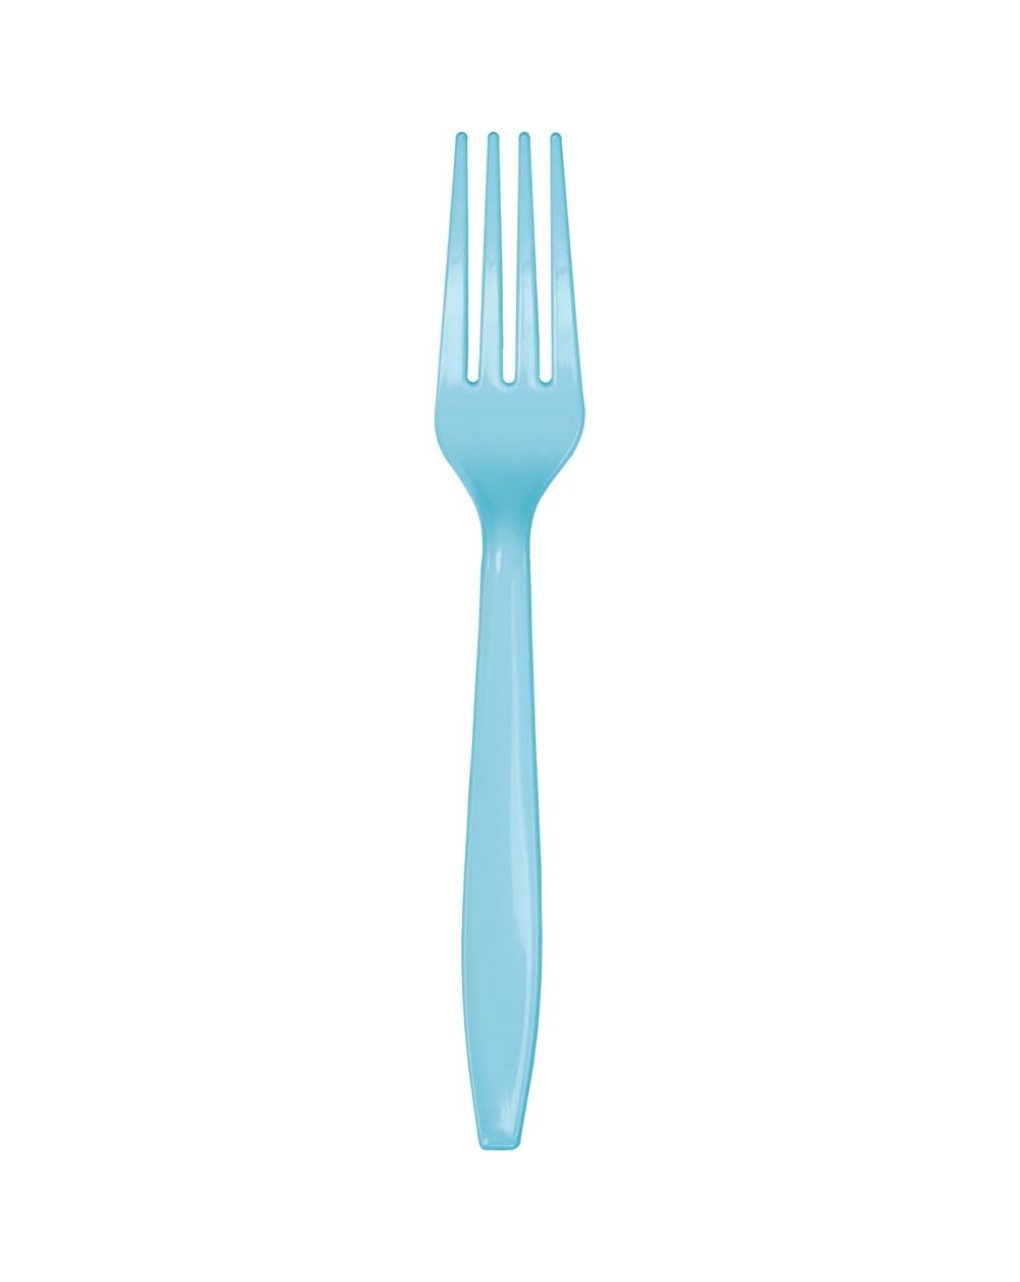 Tenedor de plástico h. 18 cm 24 unidades - azul claro pastel - Bigiemme